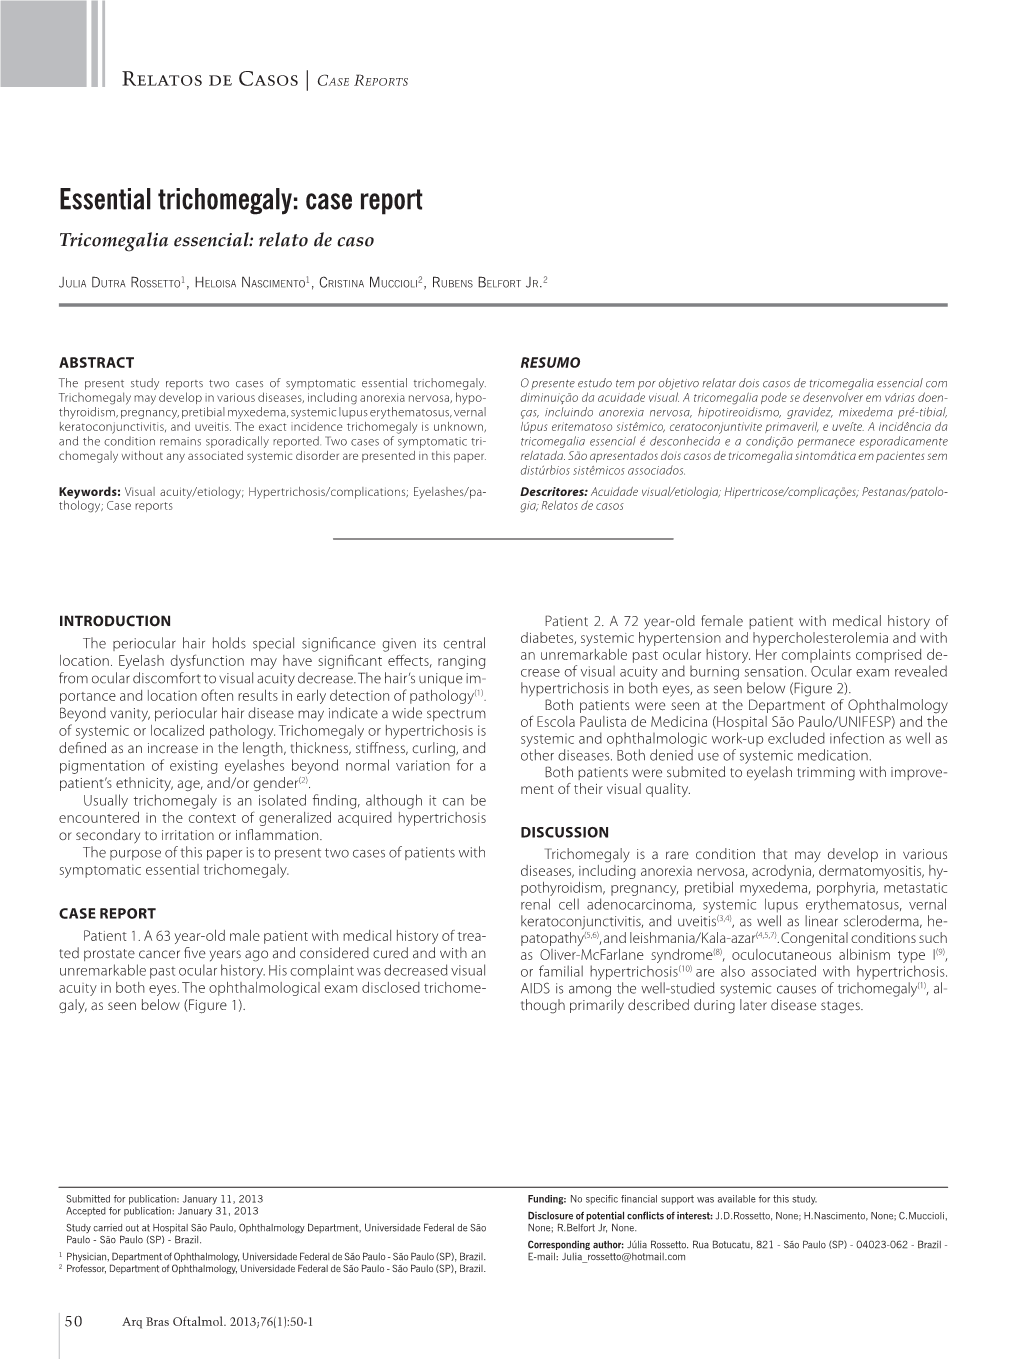 Essential Trichomegaly: Case Report Tricomegalia Essencial: Relato De Caso